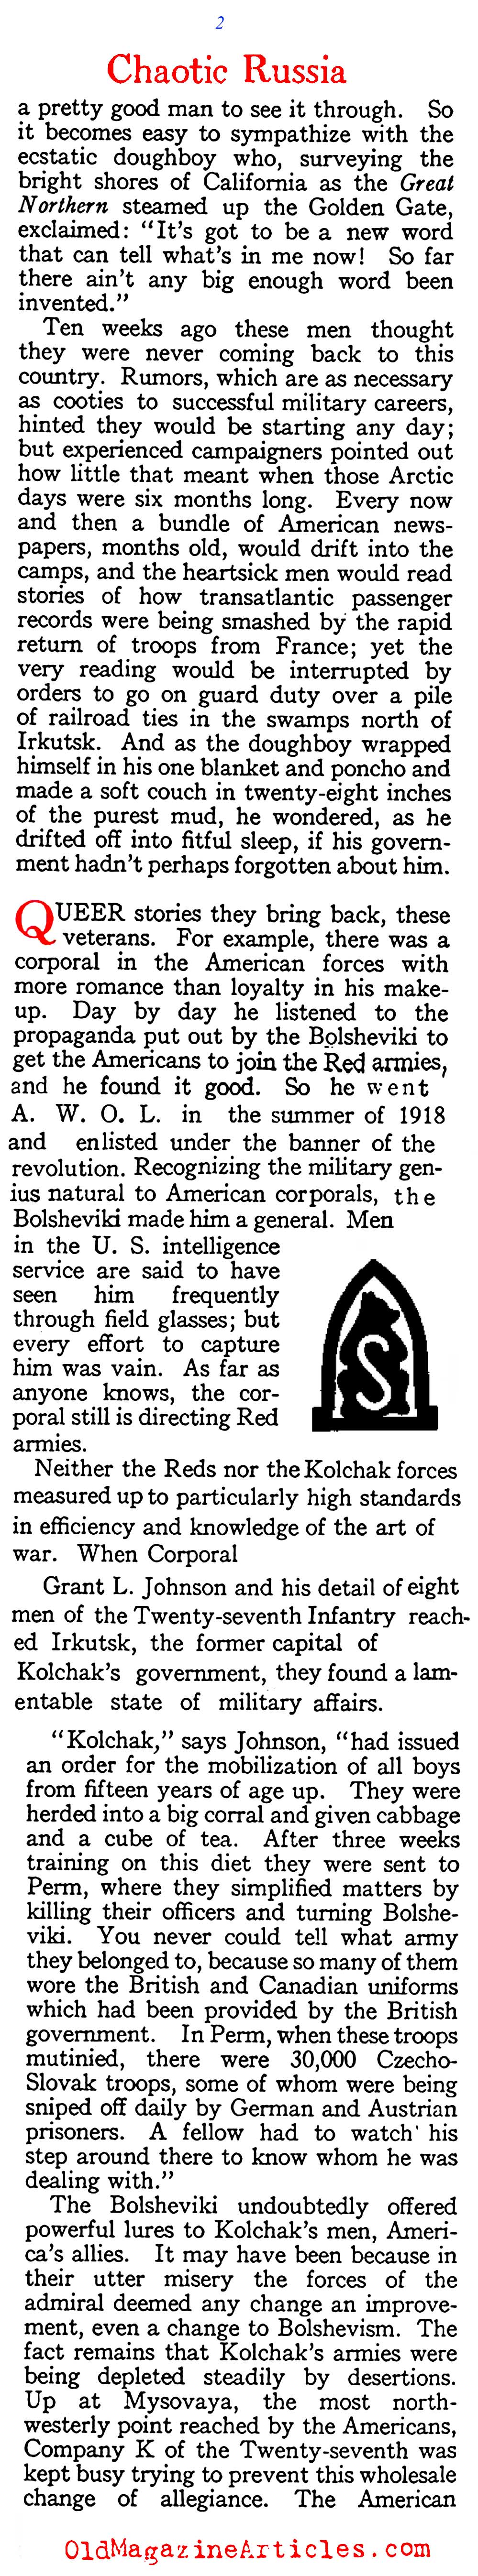 American Soldiers Remember Siberia (American Legion Weekly, 1919)